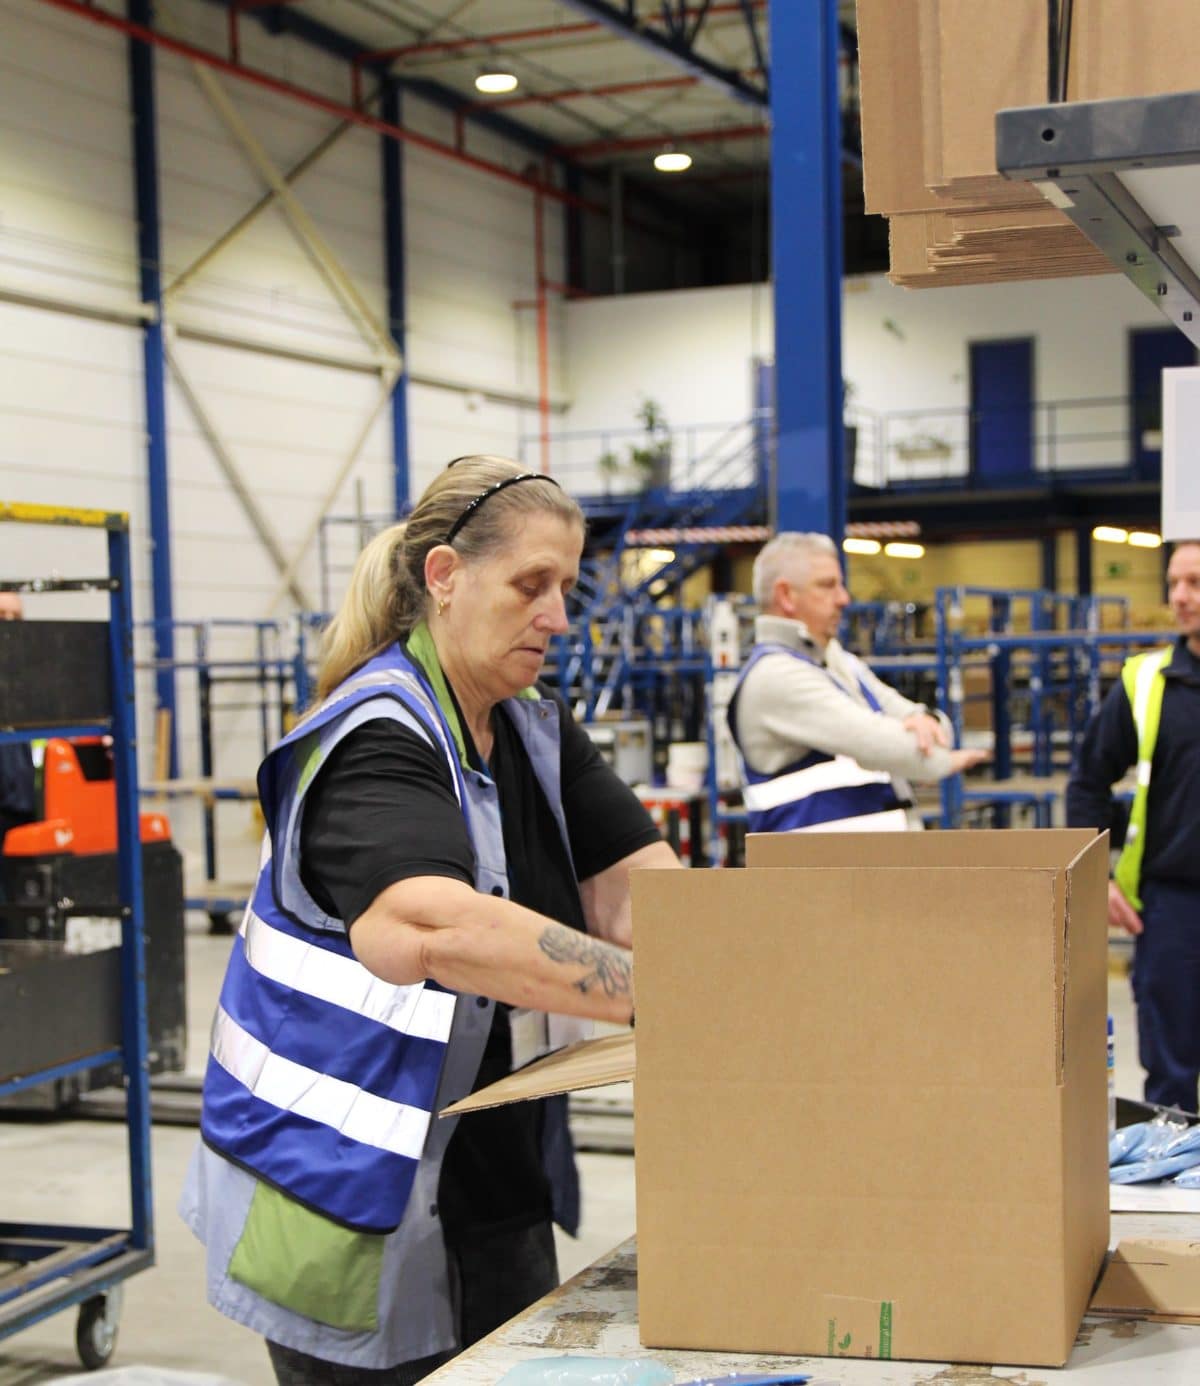 Een medewerker van Bewel is bezig met producten te verpakken in een grotere kartonnen doos, die op een werktafel staat.